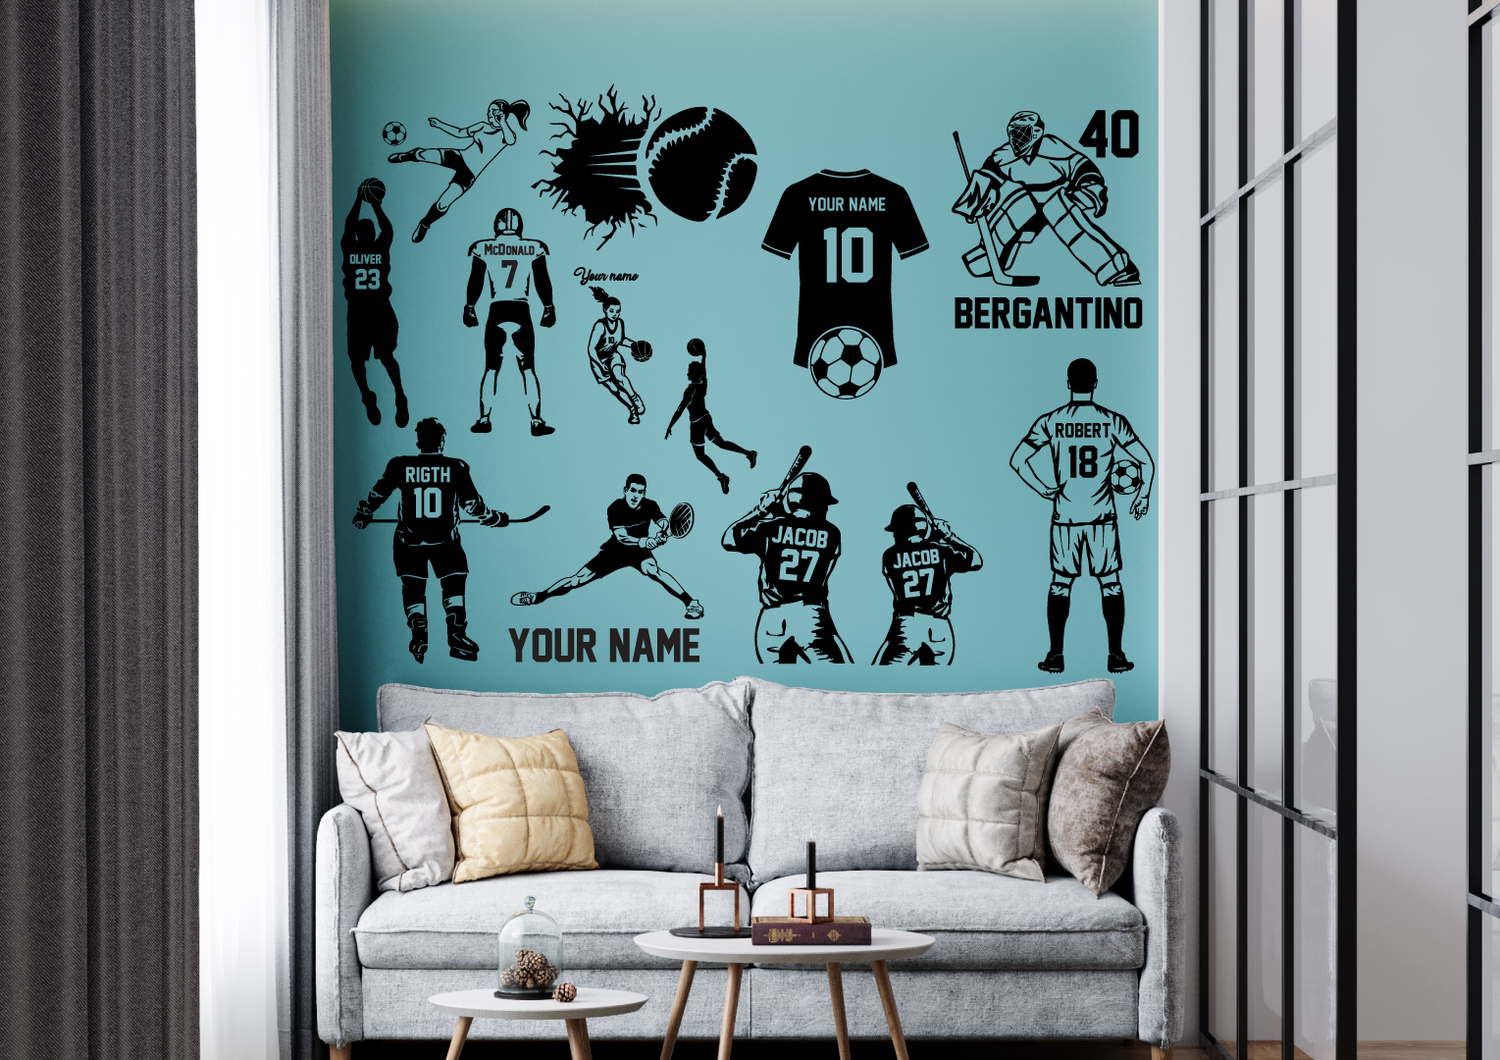 Wall Vinyl Decal Home Decor Art Sticker Football Player Sport Customiz